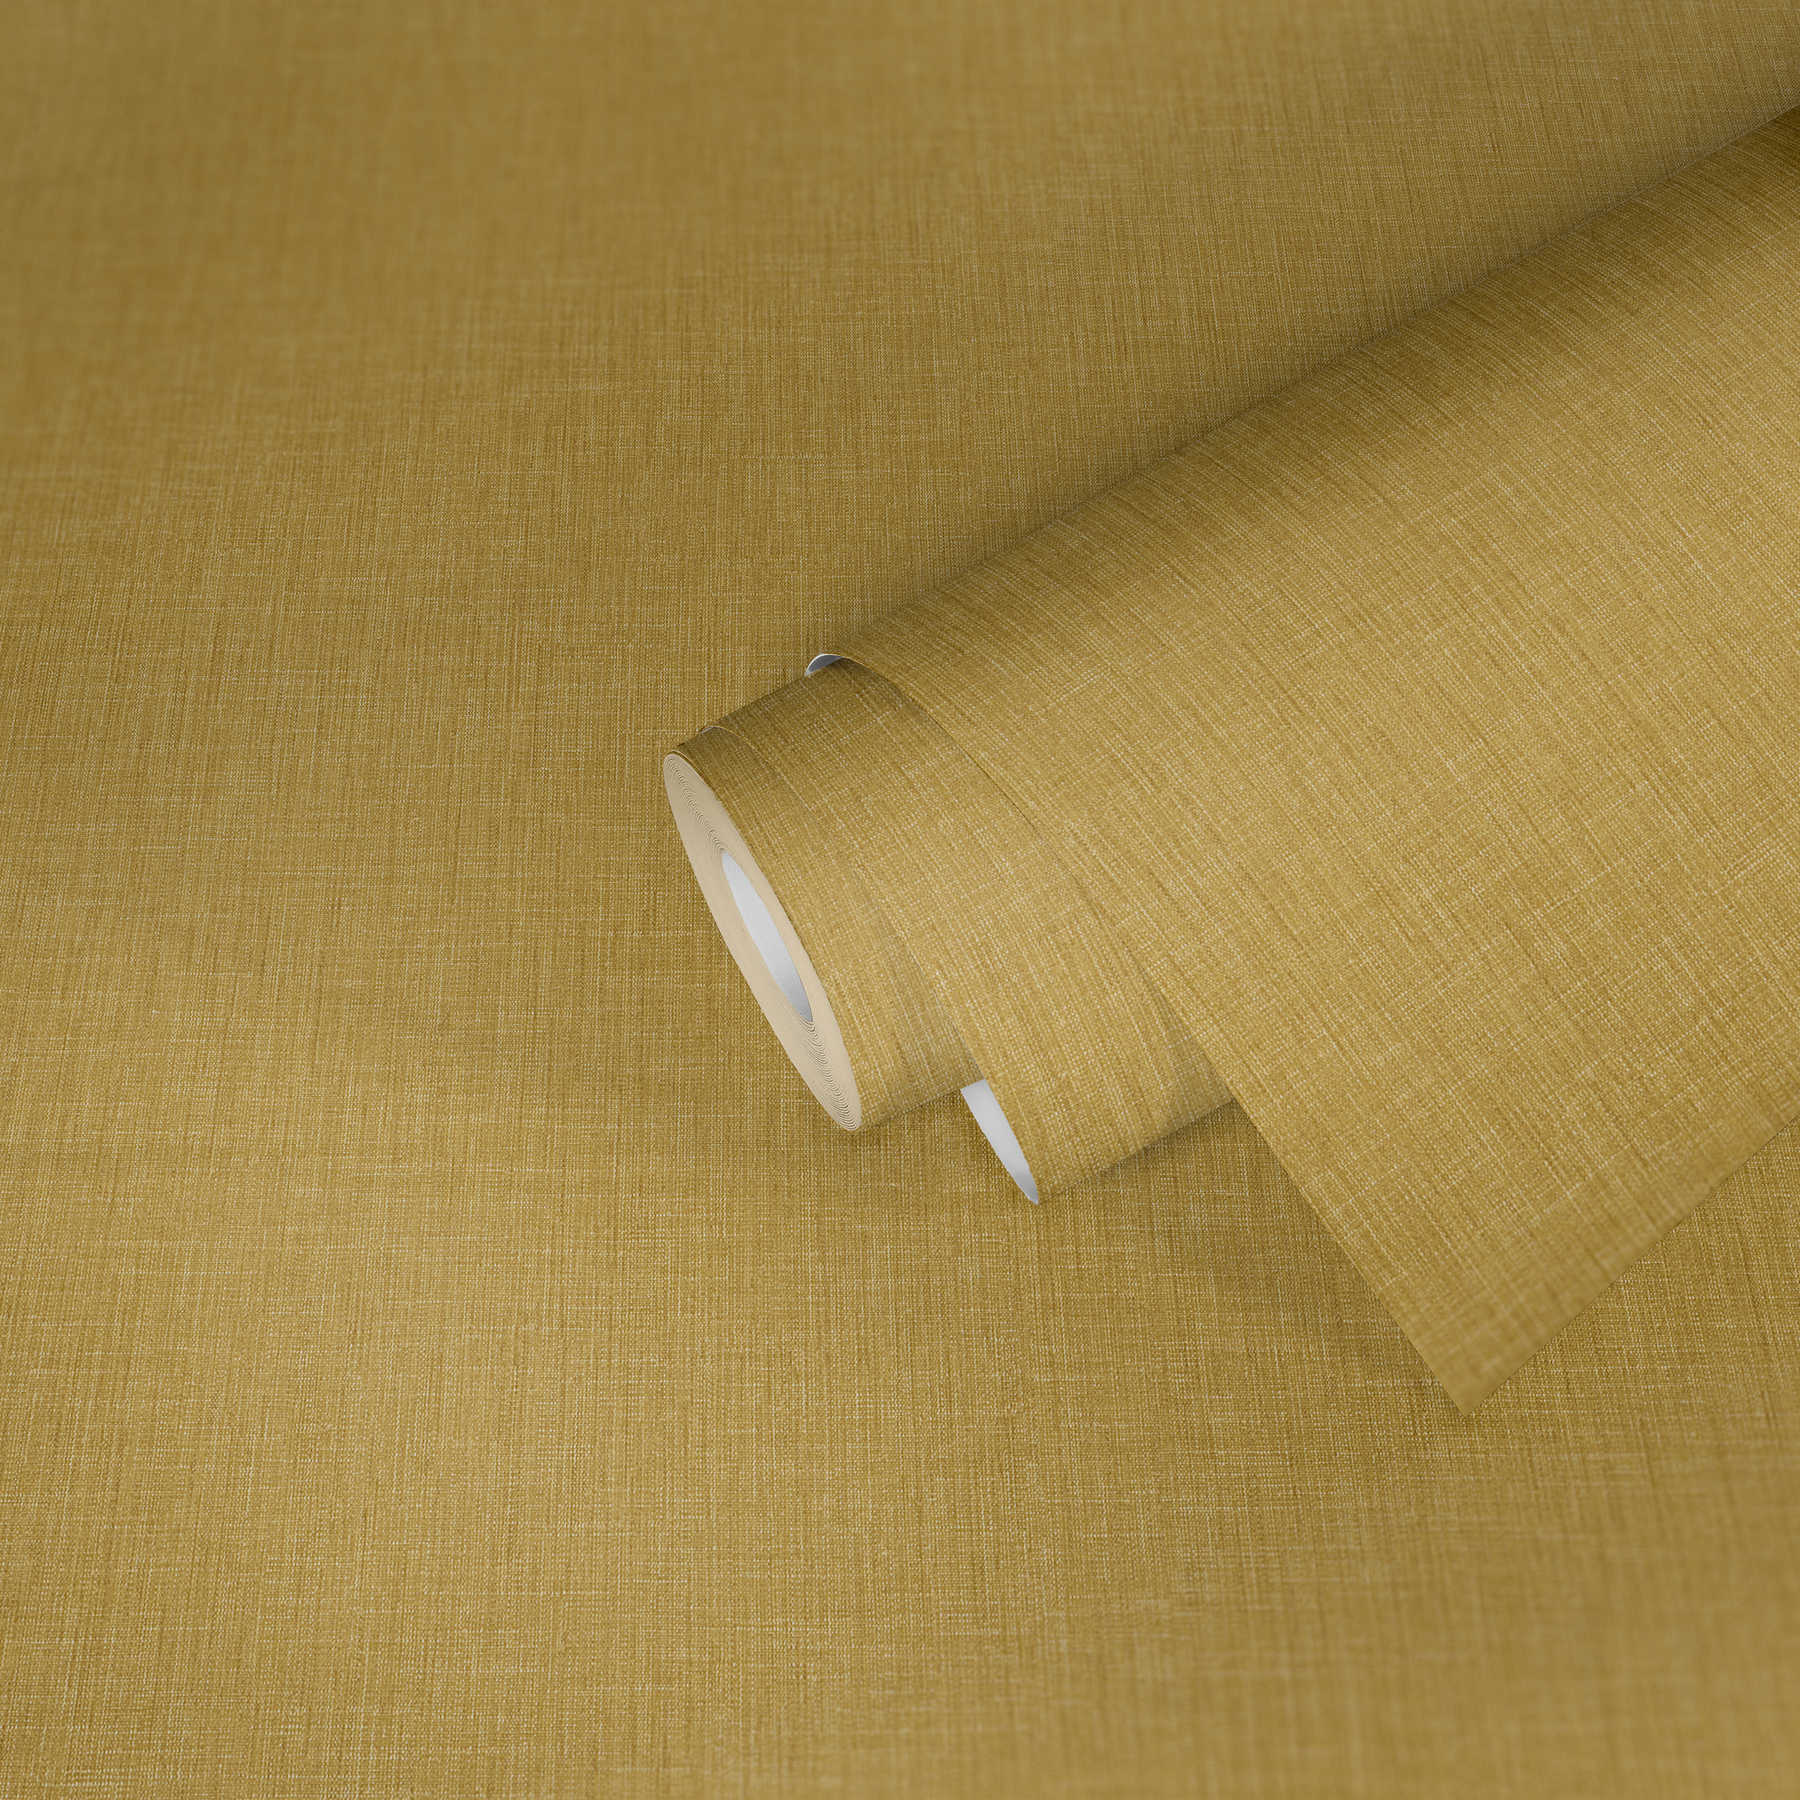             Papier peint uni avec structure textile - jaune
        